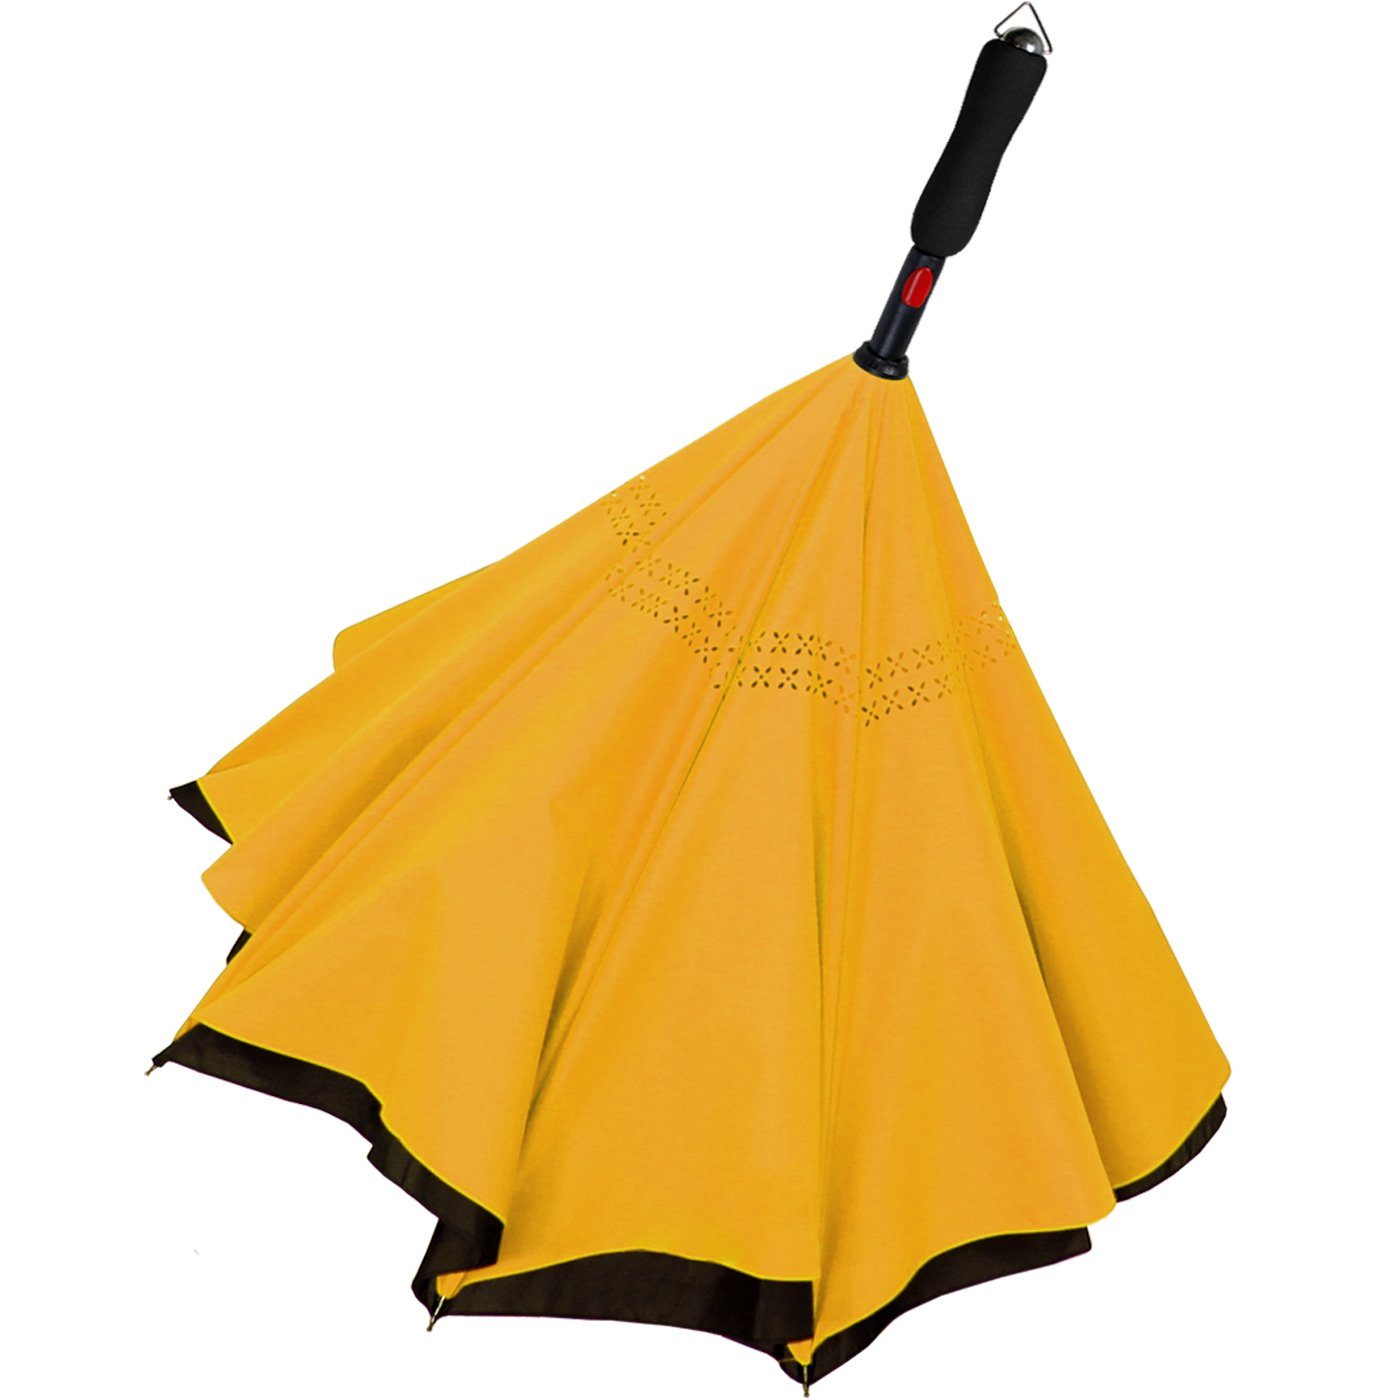 schwarz-gelb zu Automatik, - öffnen umgedreht Reverse-Schirm mit Langregenschirm iX-brella umgedreht